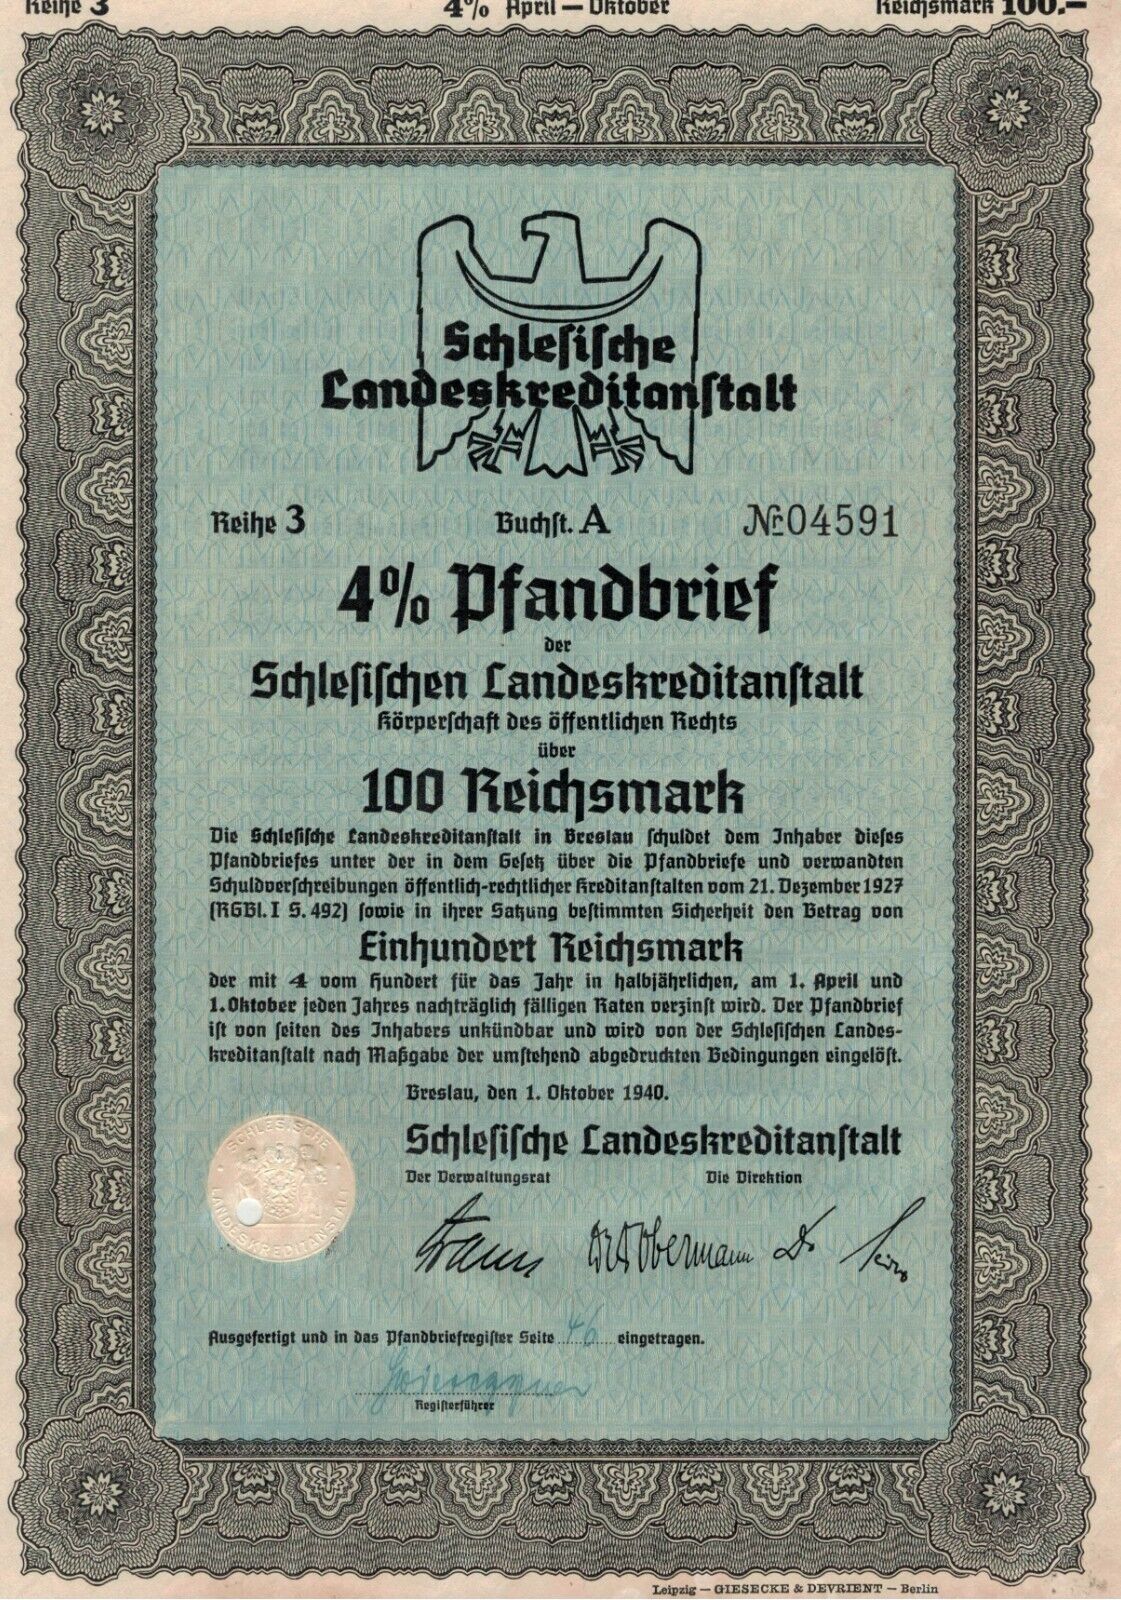 German Reich Bond 100 Reichsmark Bond Certificate, 1940 Breslau, Silesia ,012